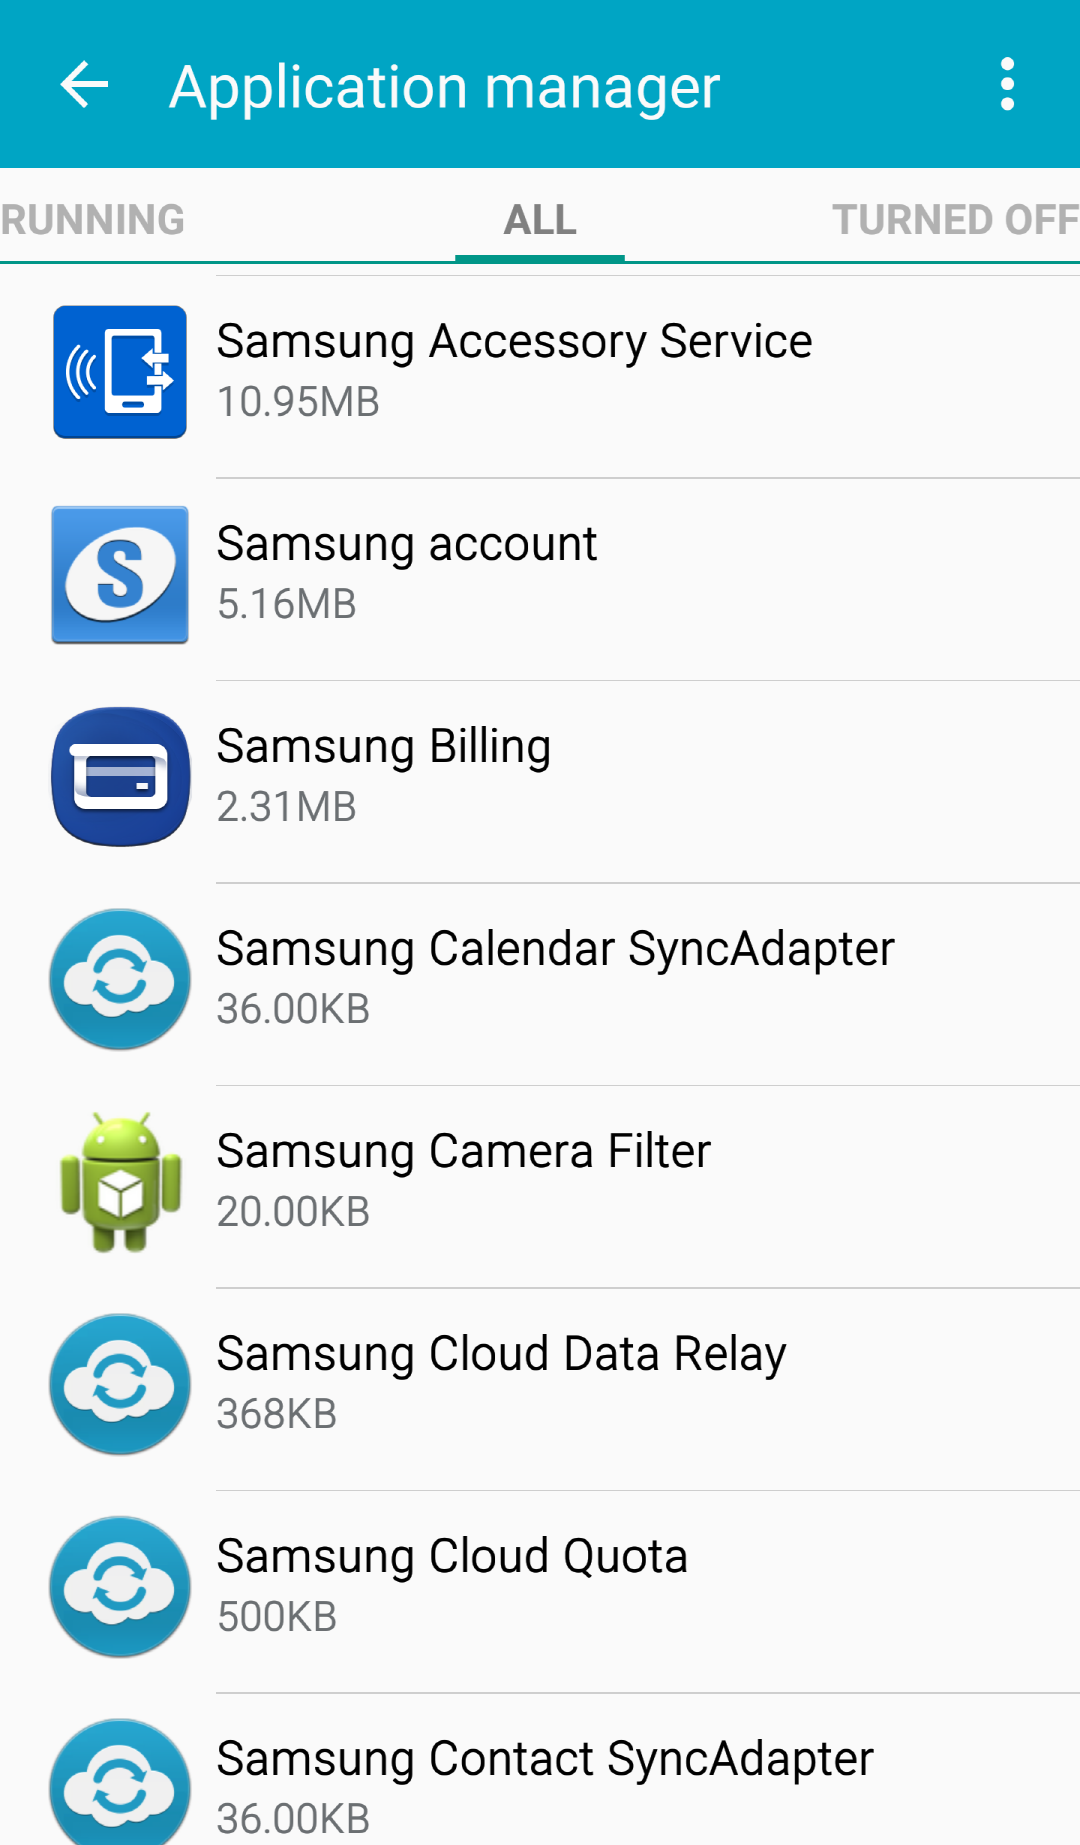 Samsung Accessory Service4